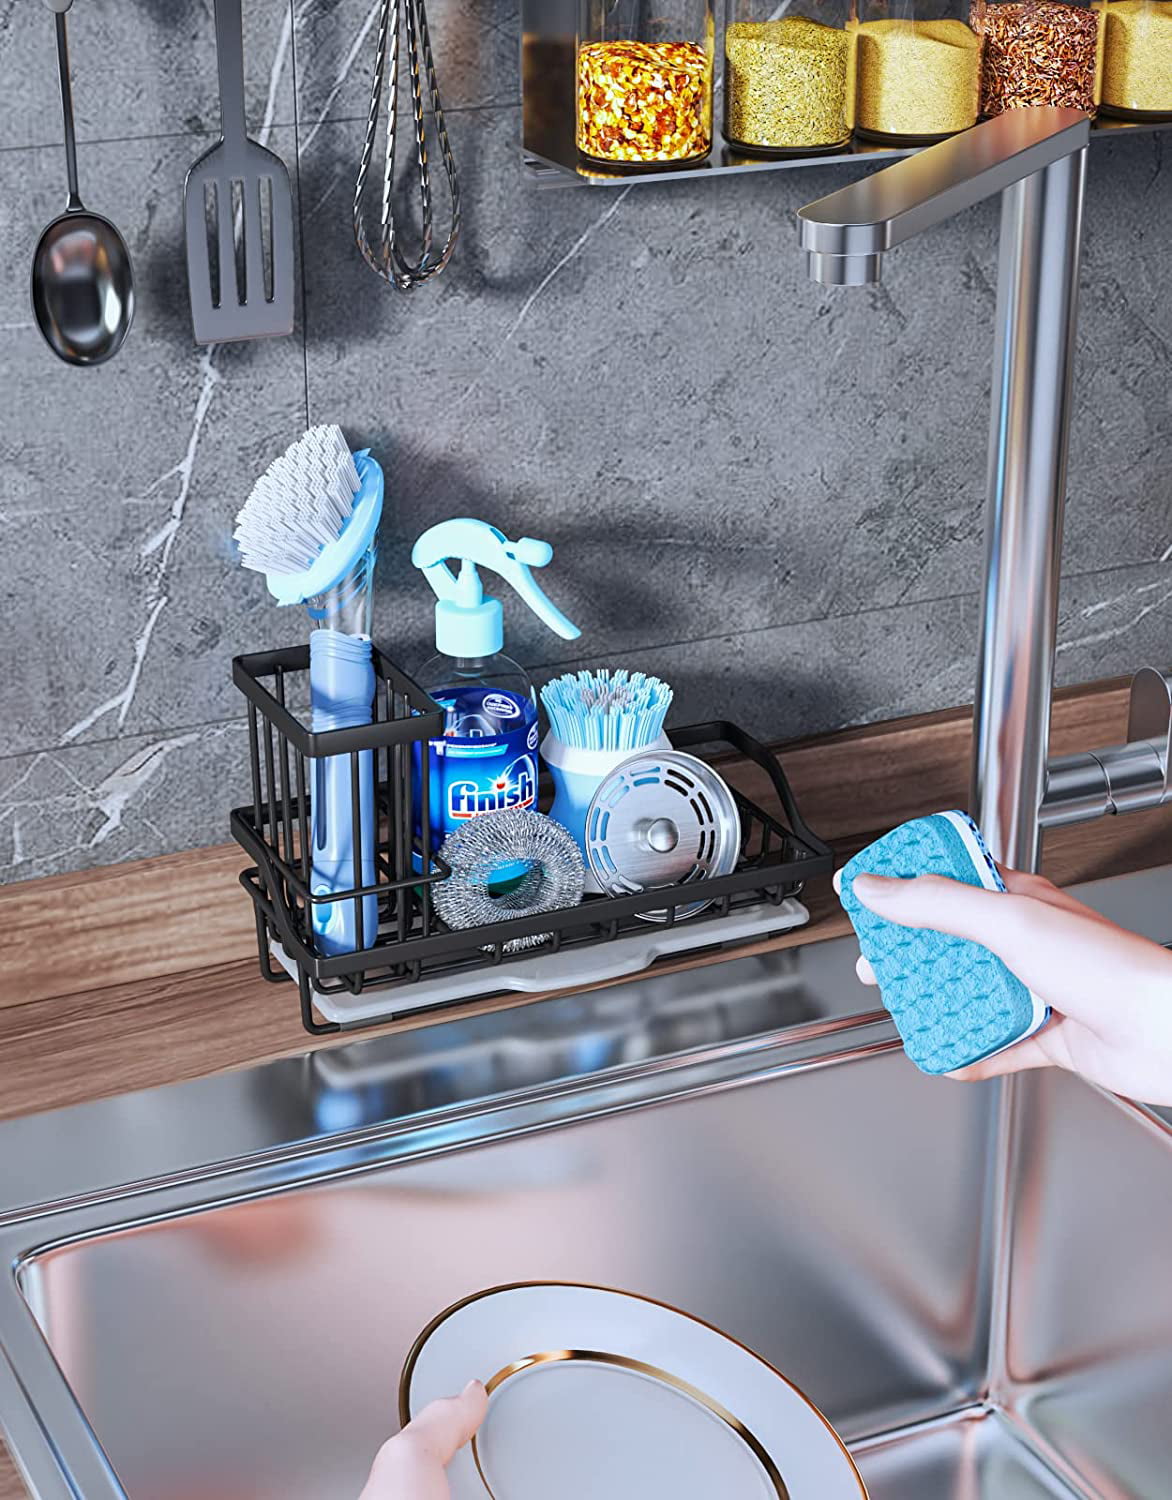 kitchen sink caddy holder for dish Soap or sink sponge holder - Brush –  sagler